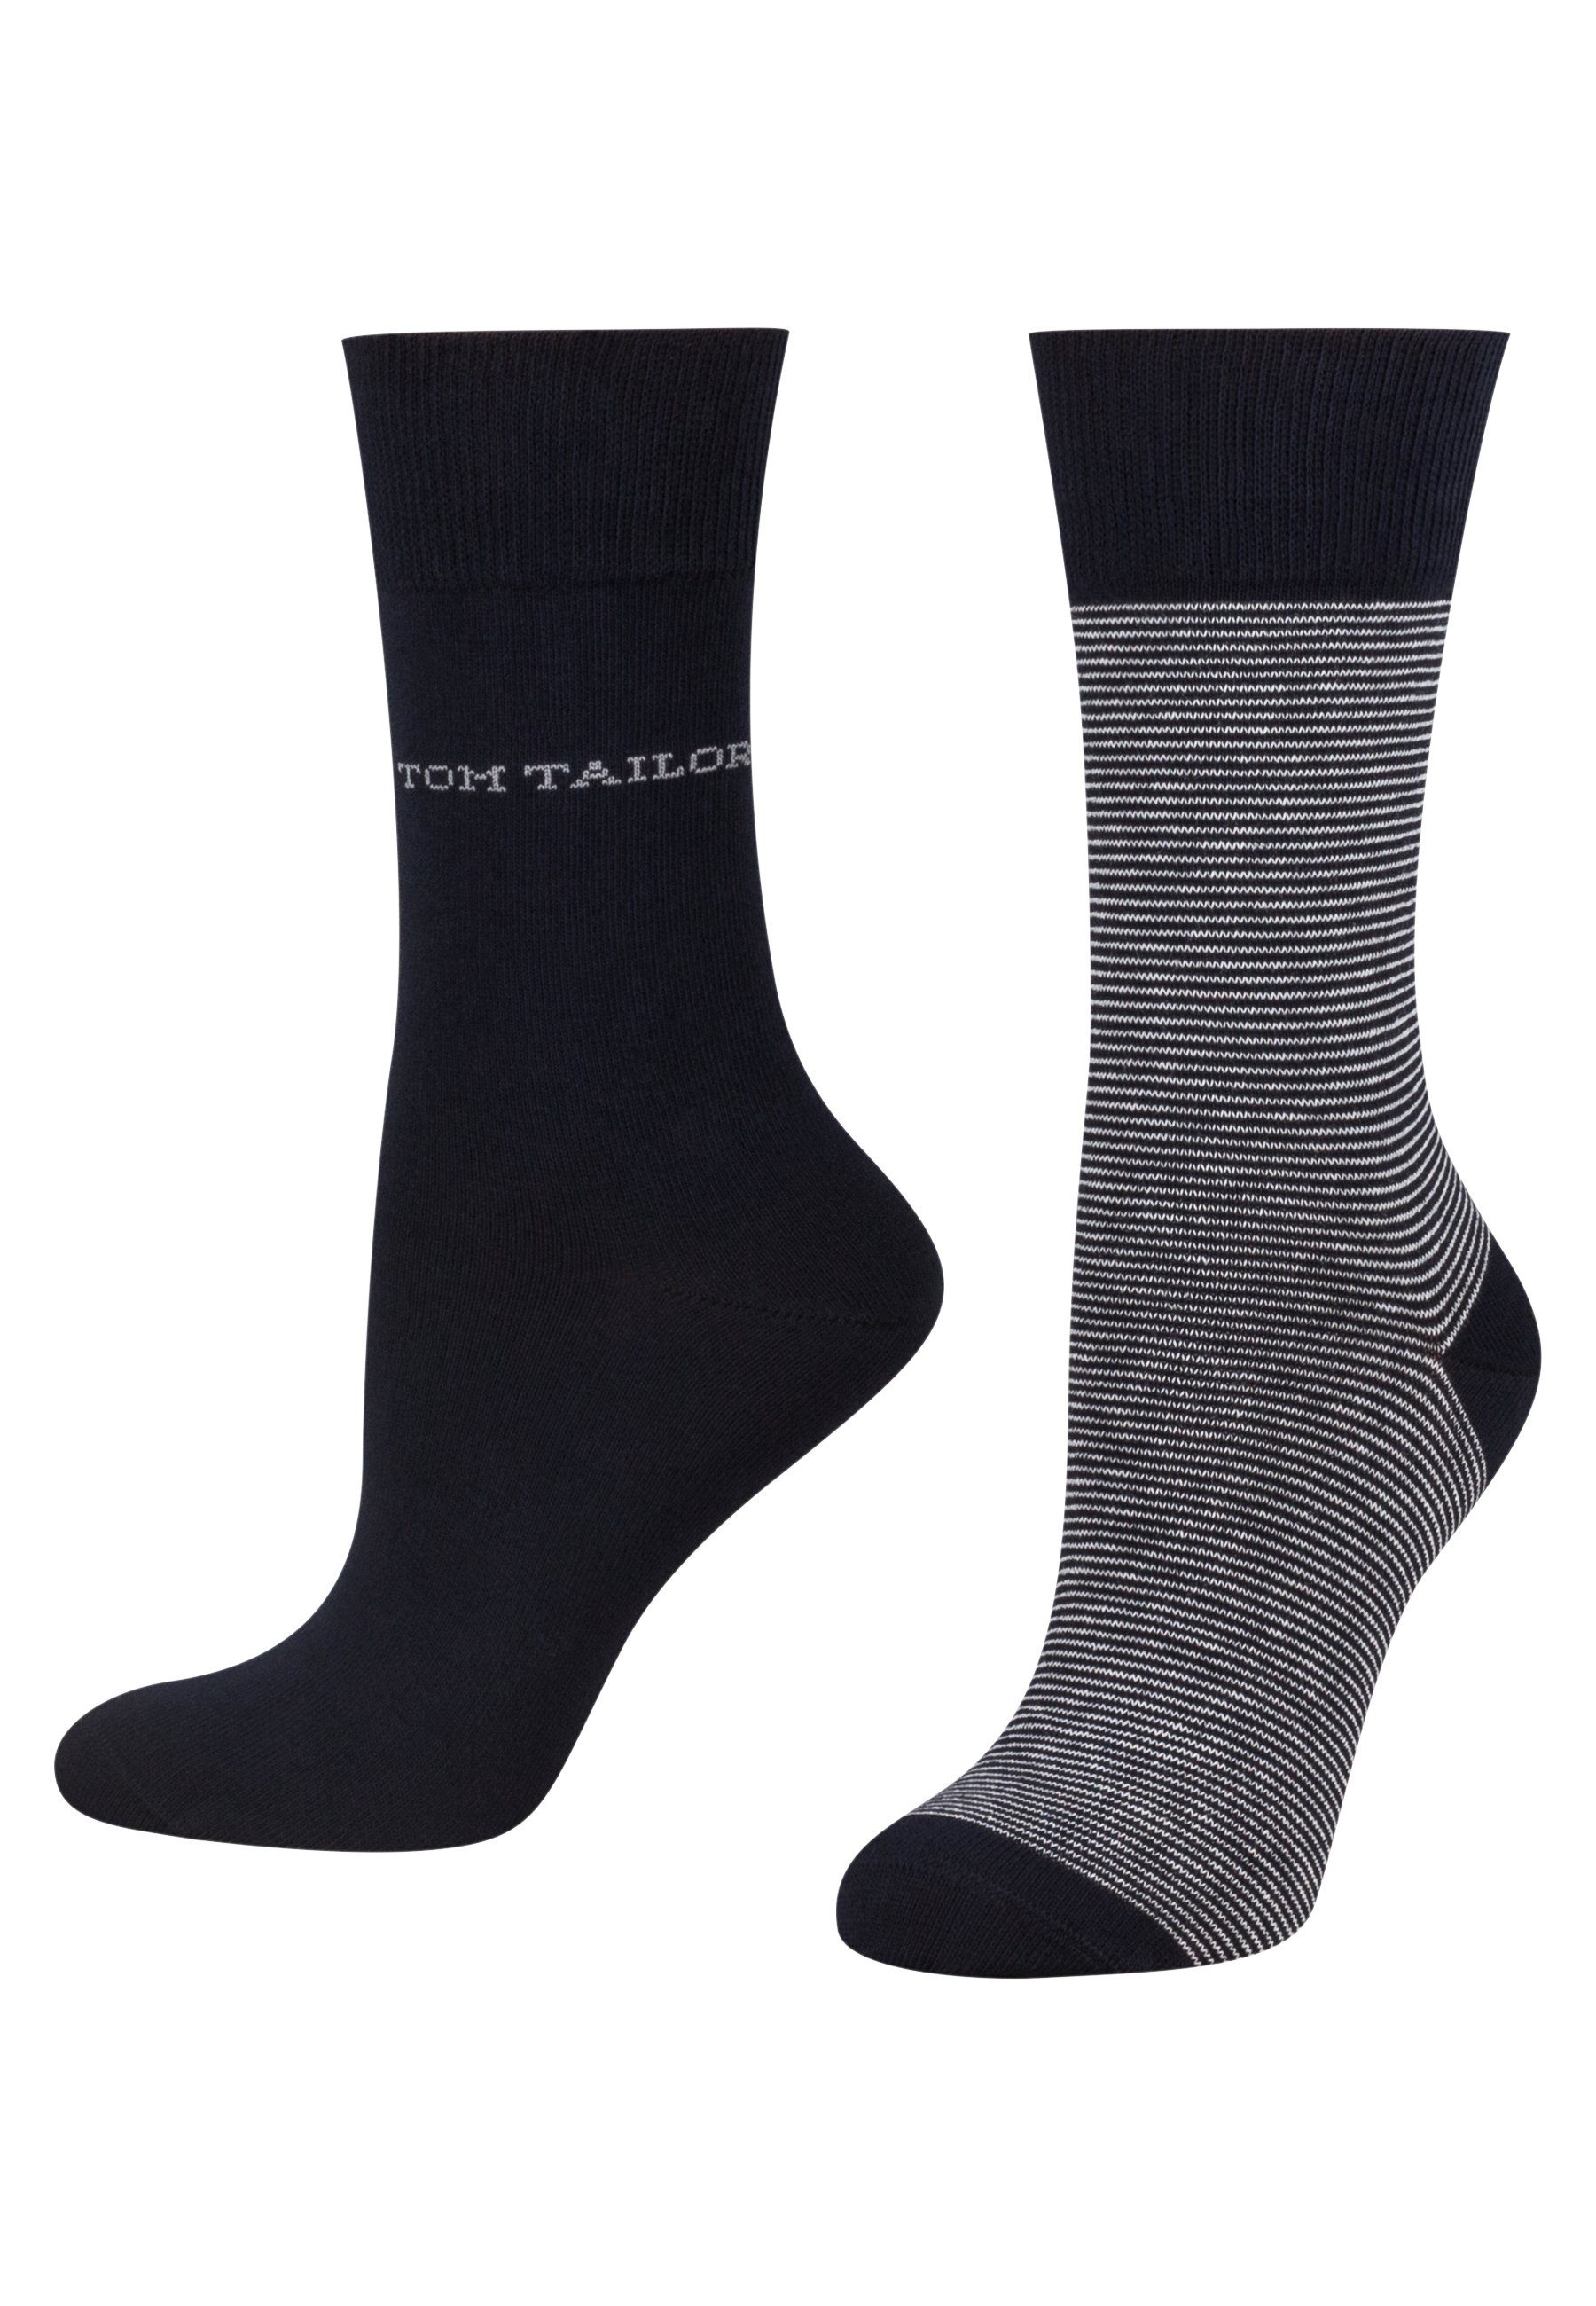 Socken stripe TAILOR 2er Tailor TOM 9521545042 basic women socks Tom navy